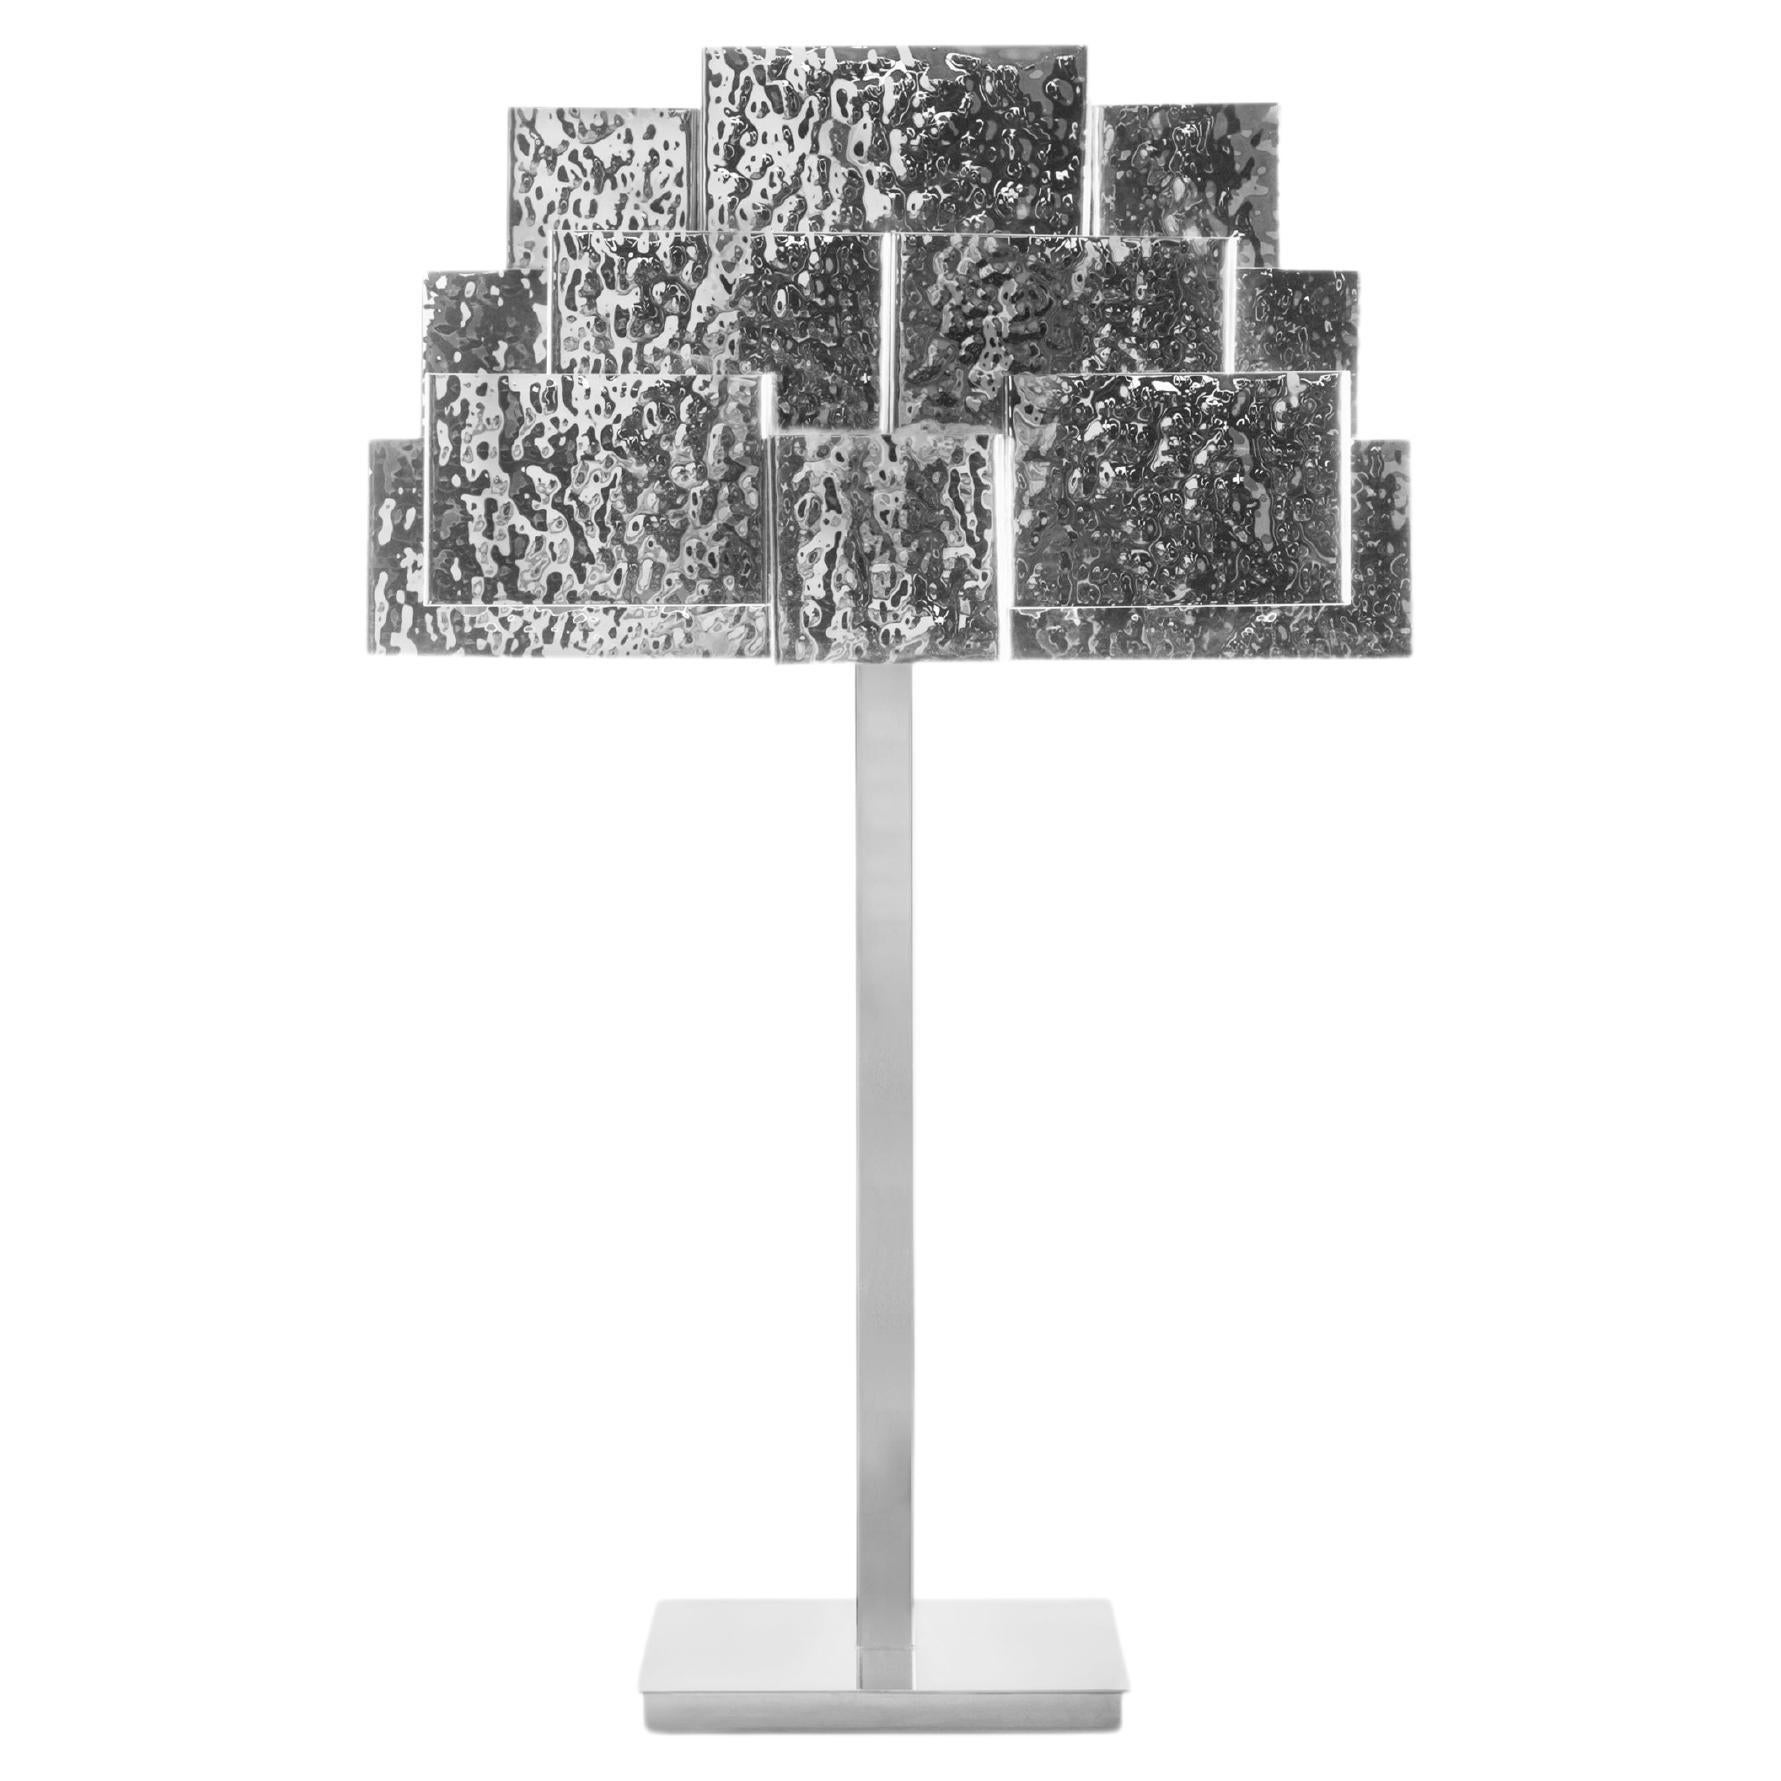 Inspirierende Trees-Tischlampe aus gehämmertem Nickel, InsidherLand von Joana Santos Barbosa